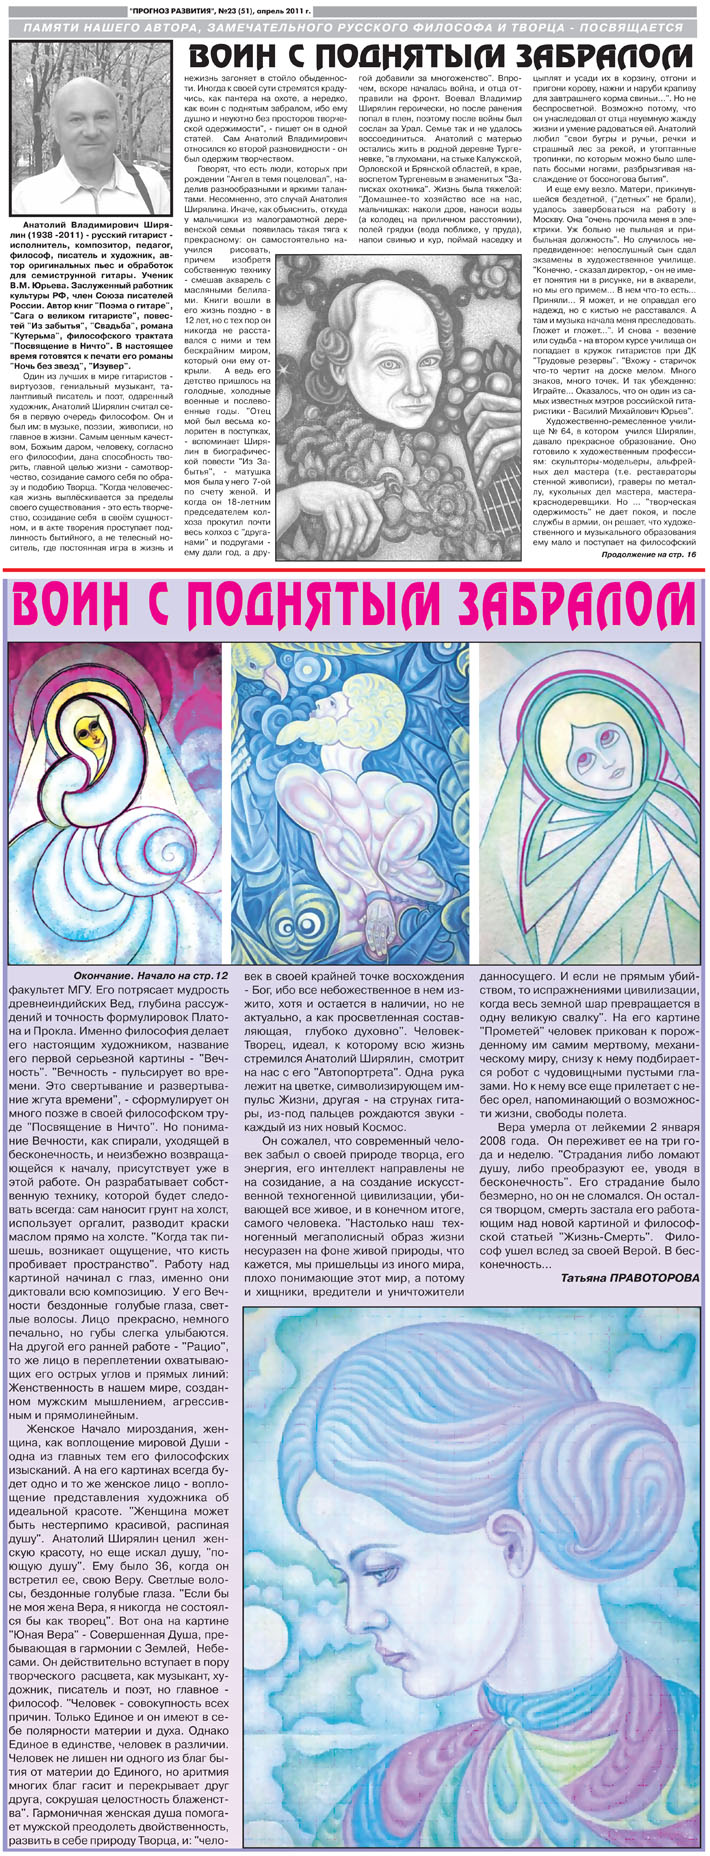 Статья памяти А. В. Ширялина в газете "Прогноз развития" (2011)